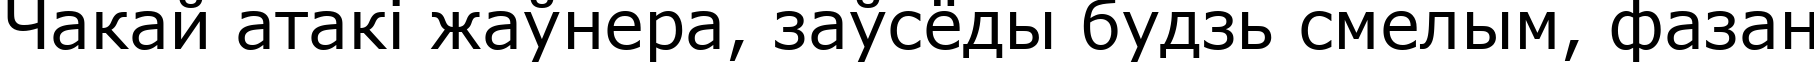 Пример написания шрифтом MS Reference Sans Serif текста на белорусском